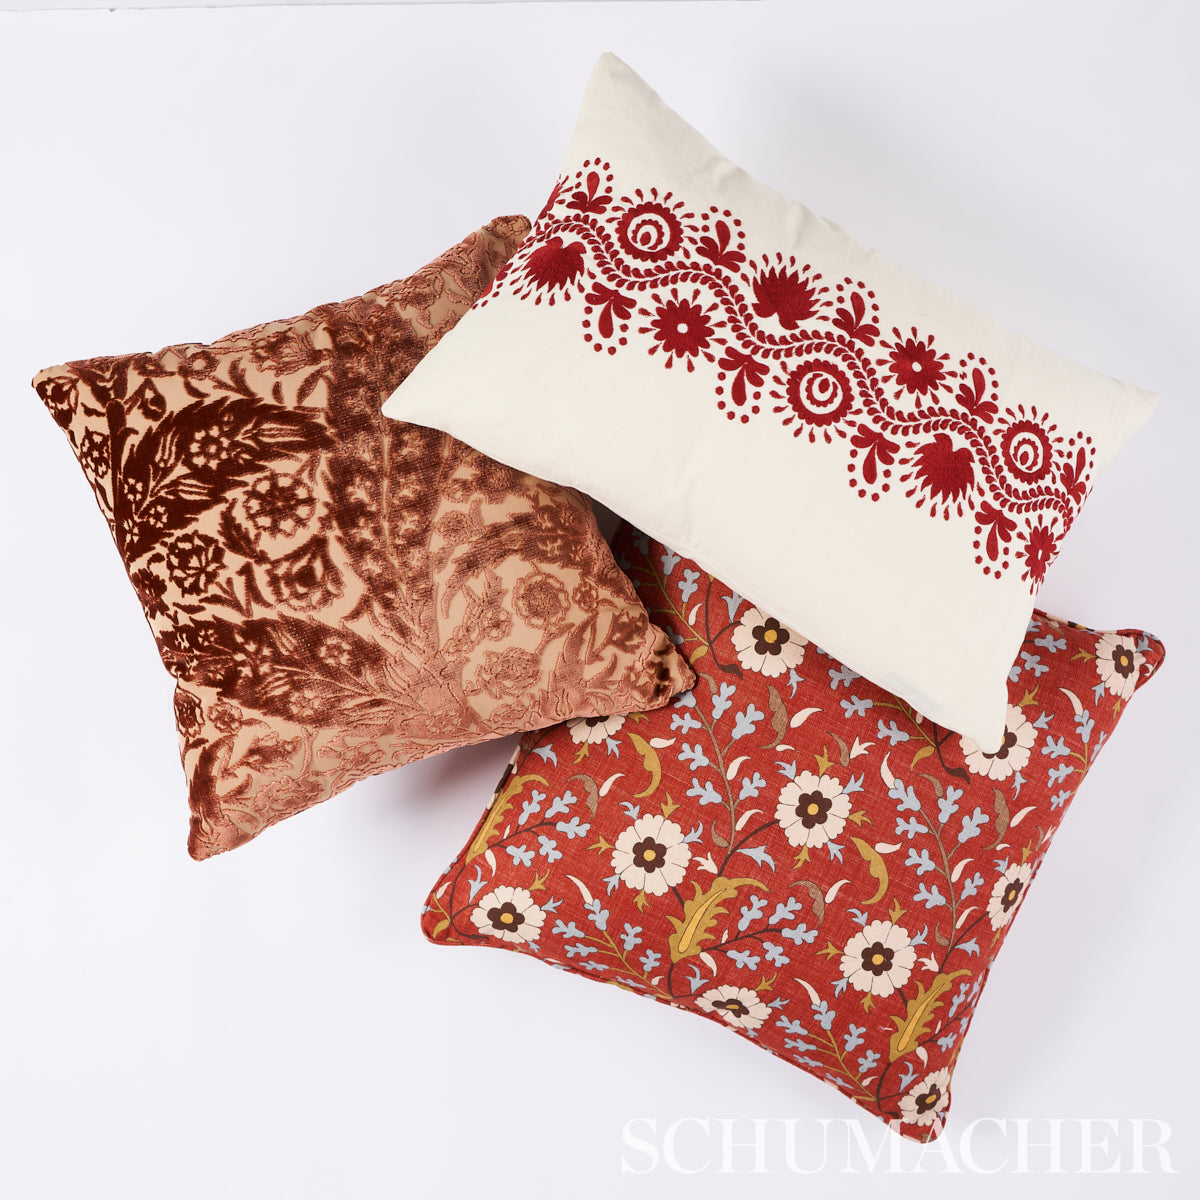 Saz Paisley Velvet Pillow | Terracotta